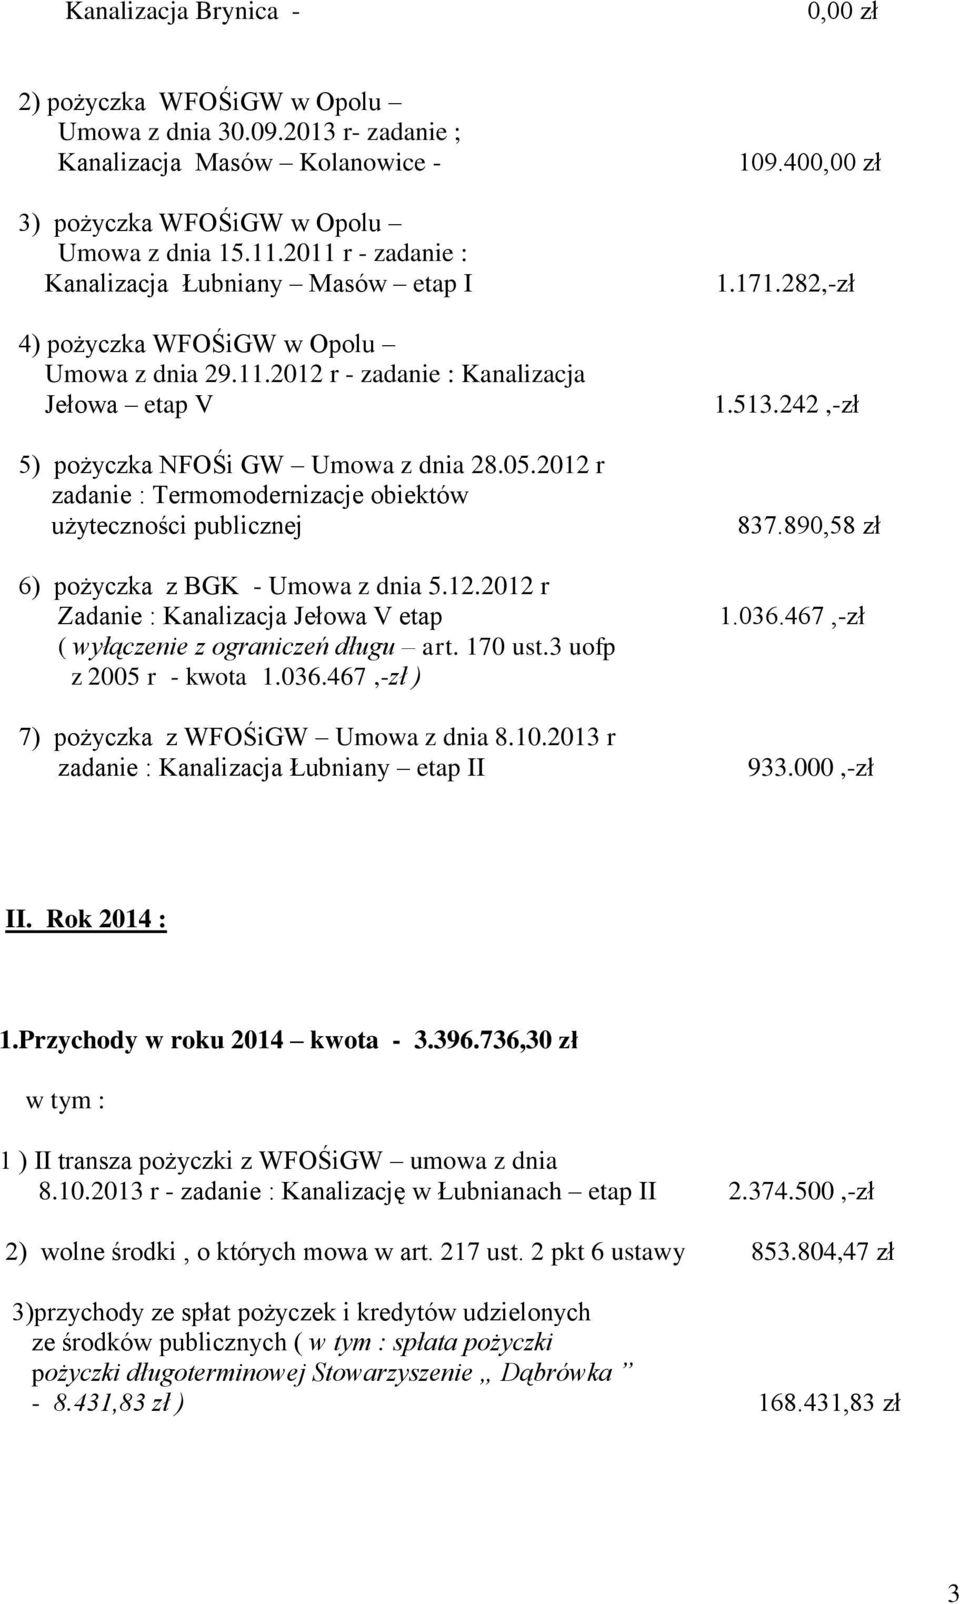 r 6) pożyczka z BGK - Umowa z dnia 5.12.2012 r Zadanie : Kanalizacja Jełowa V etap ( wyłączenie z ograniczeń długu art. 170 ust.3 uofp z 2005 r - kwota 1.036.